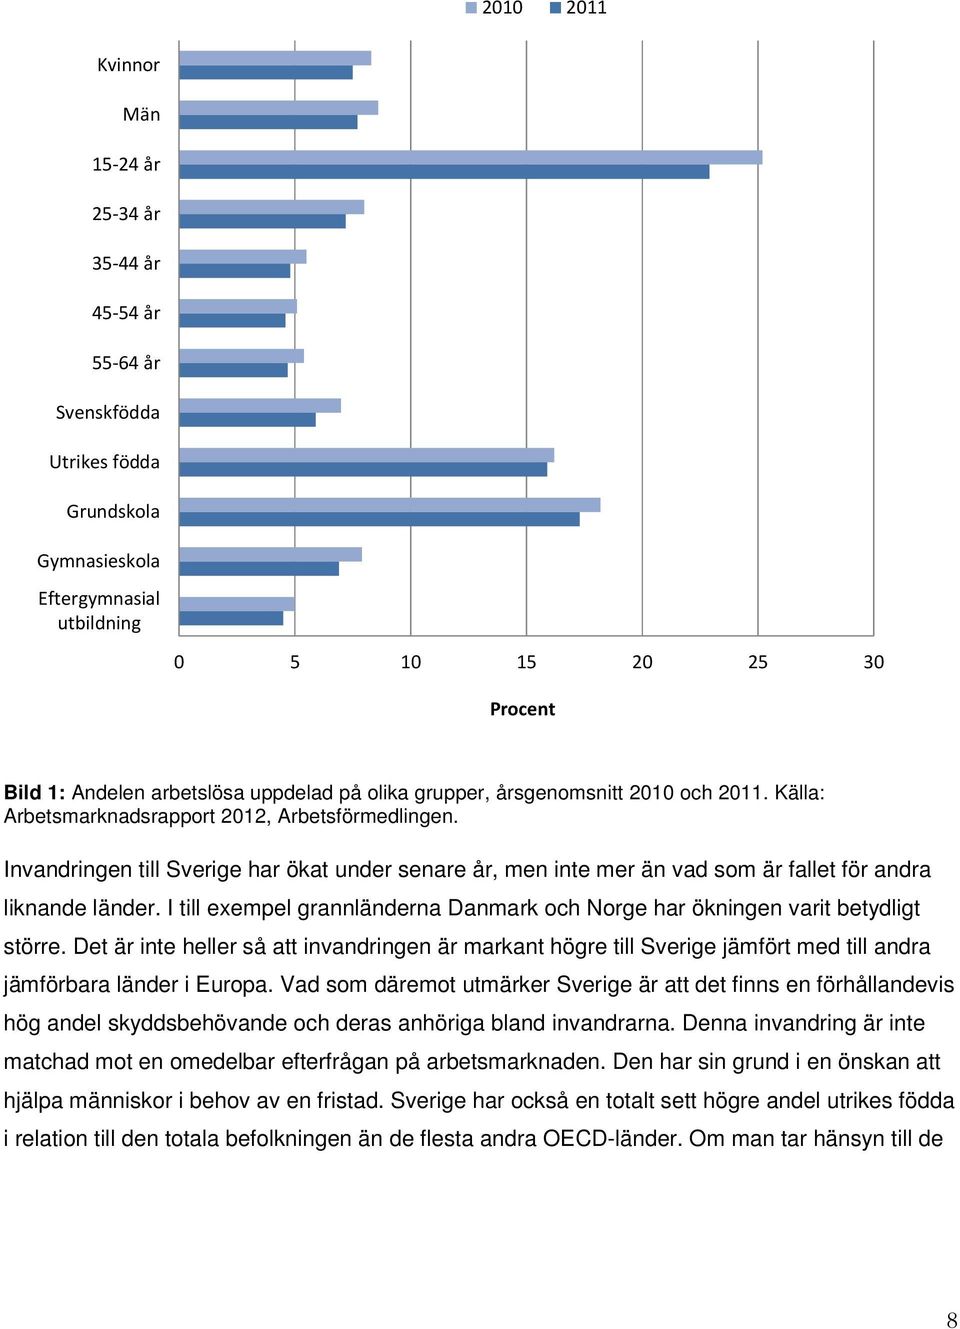 Invandringen till Sverige har ökat under senare år, men inte mer än vad som är fallet för andra liknande länder. I till exempel grannländerna Danmark och Norge har ökningen varit betydligt större.